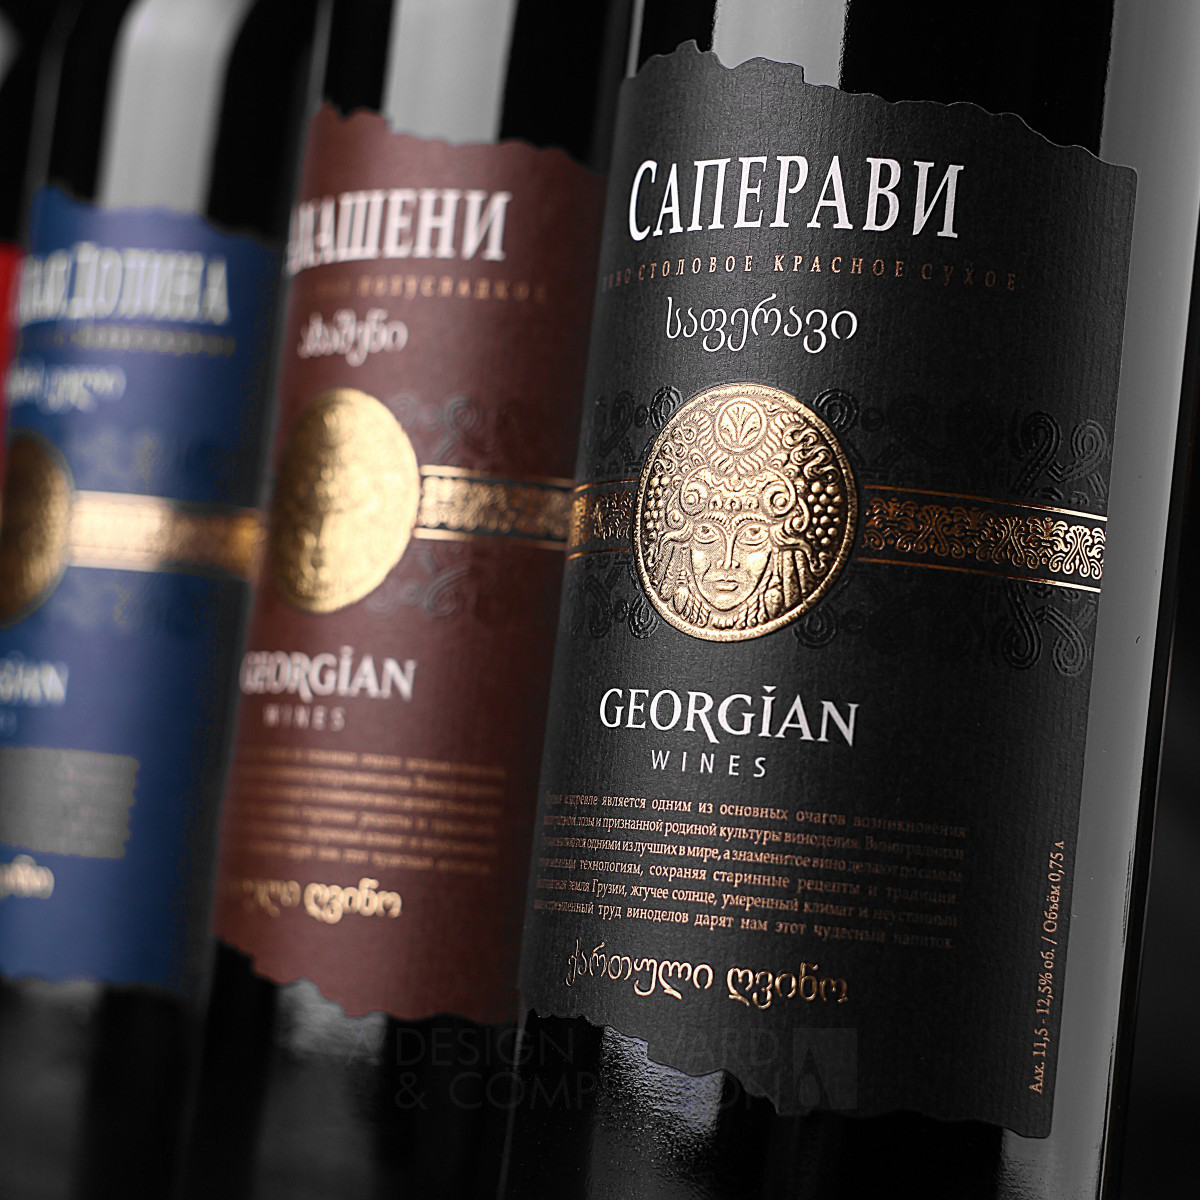 Georgian Wines <b>Series of Georgian wines